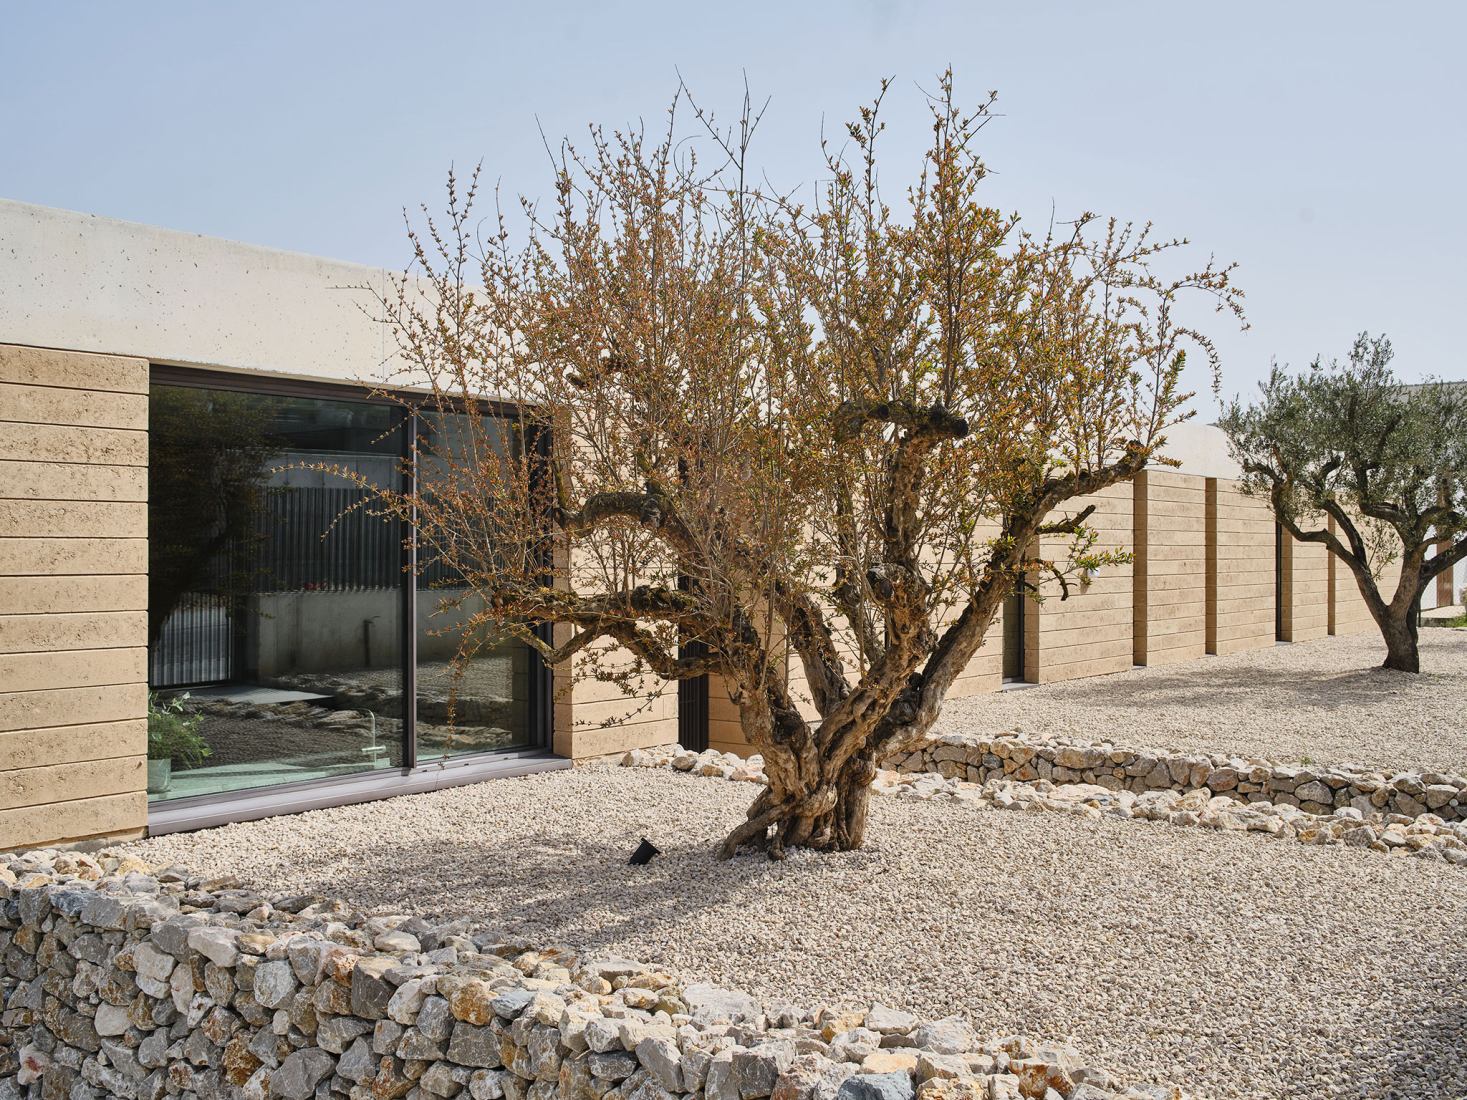 Casa Artiga by Atheleia Arquitectura. Photograph by Adrià Goula.